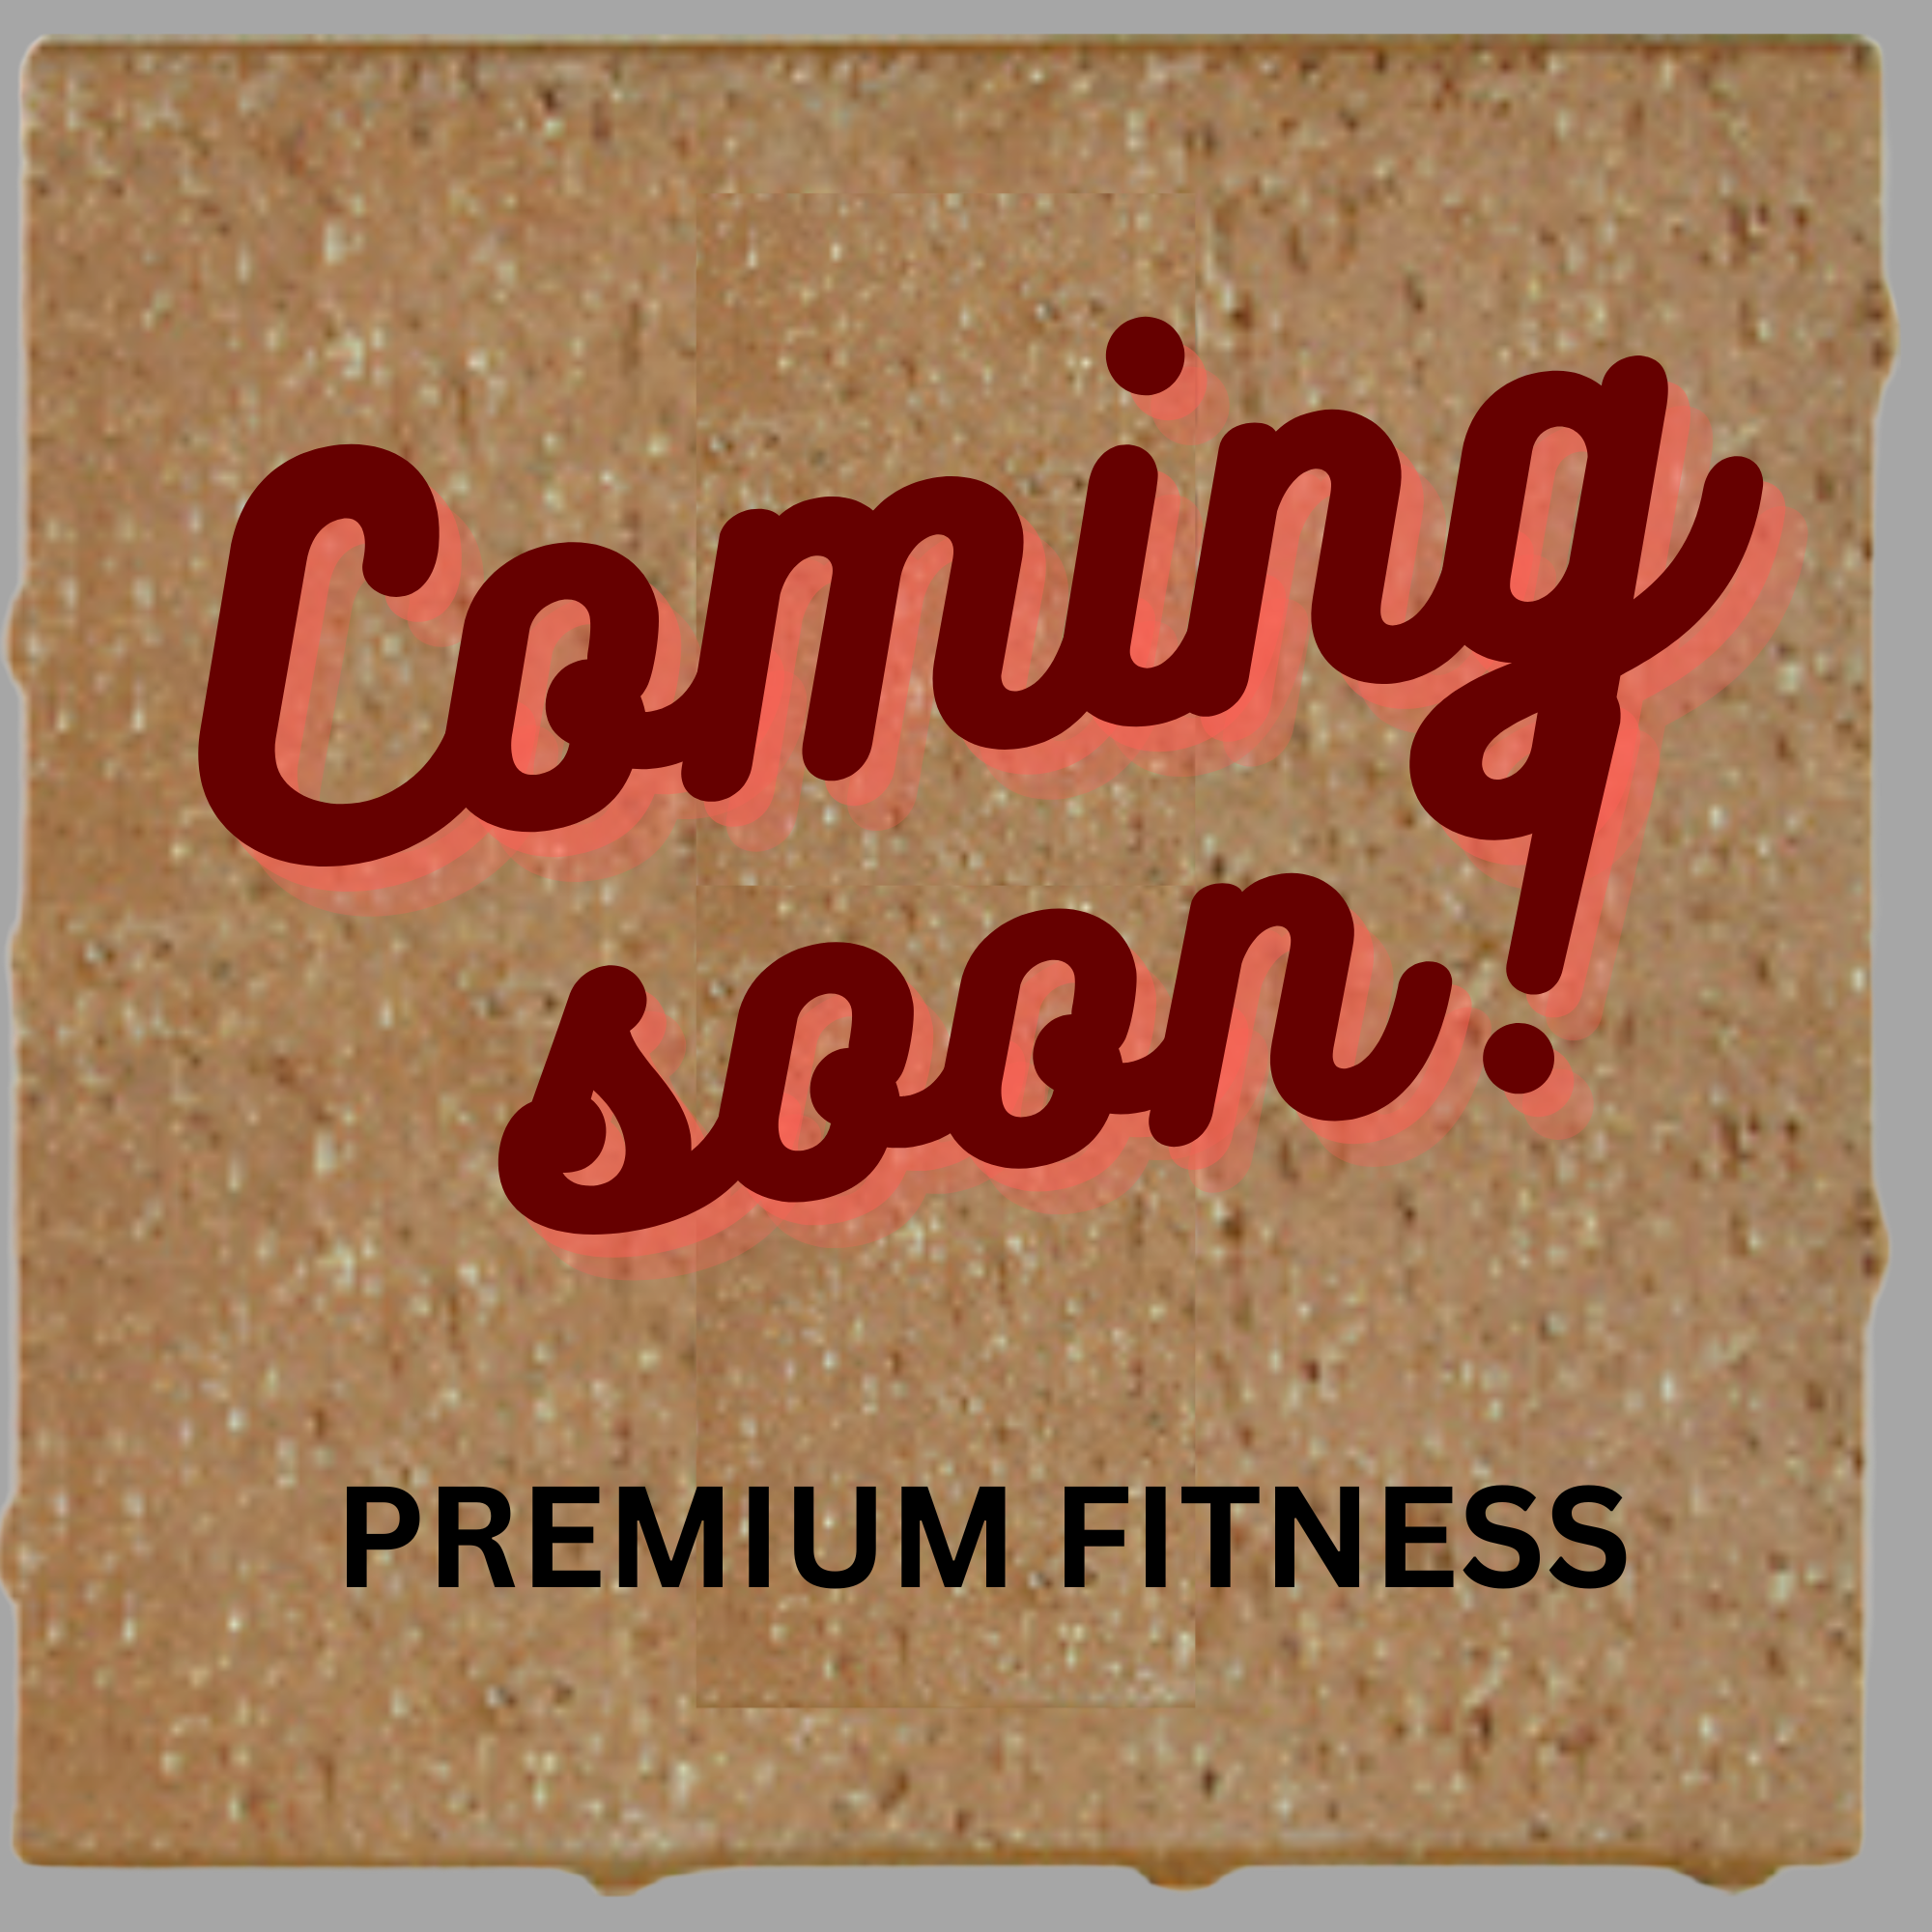 Premium Fitness